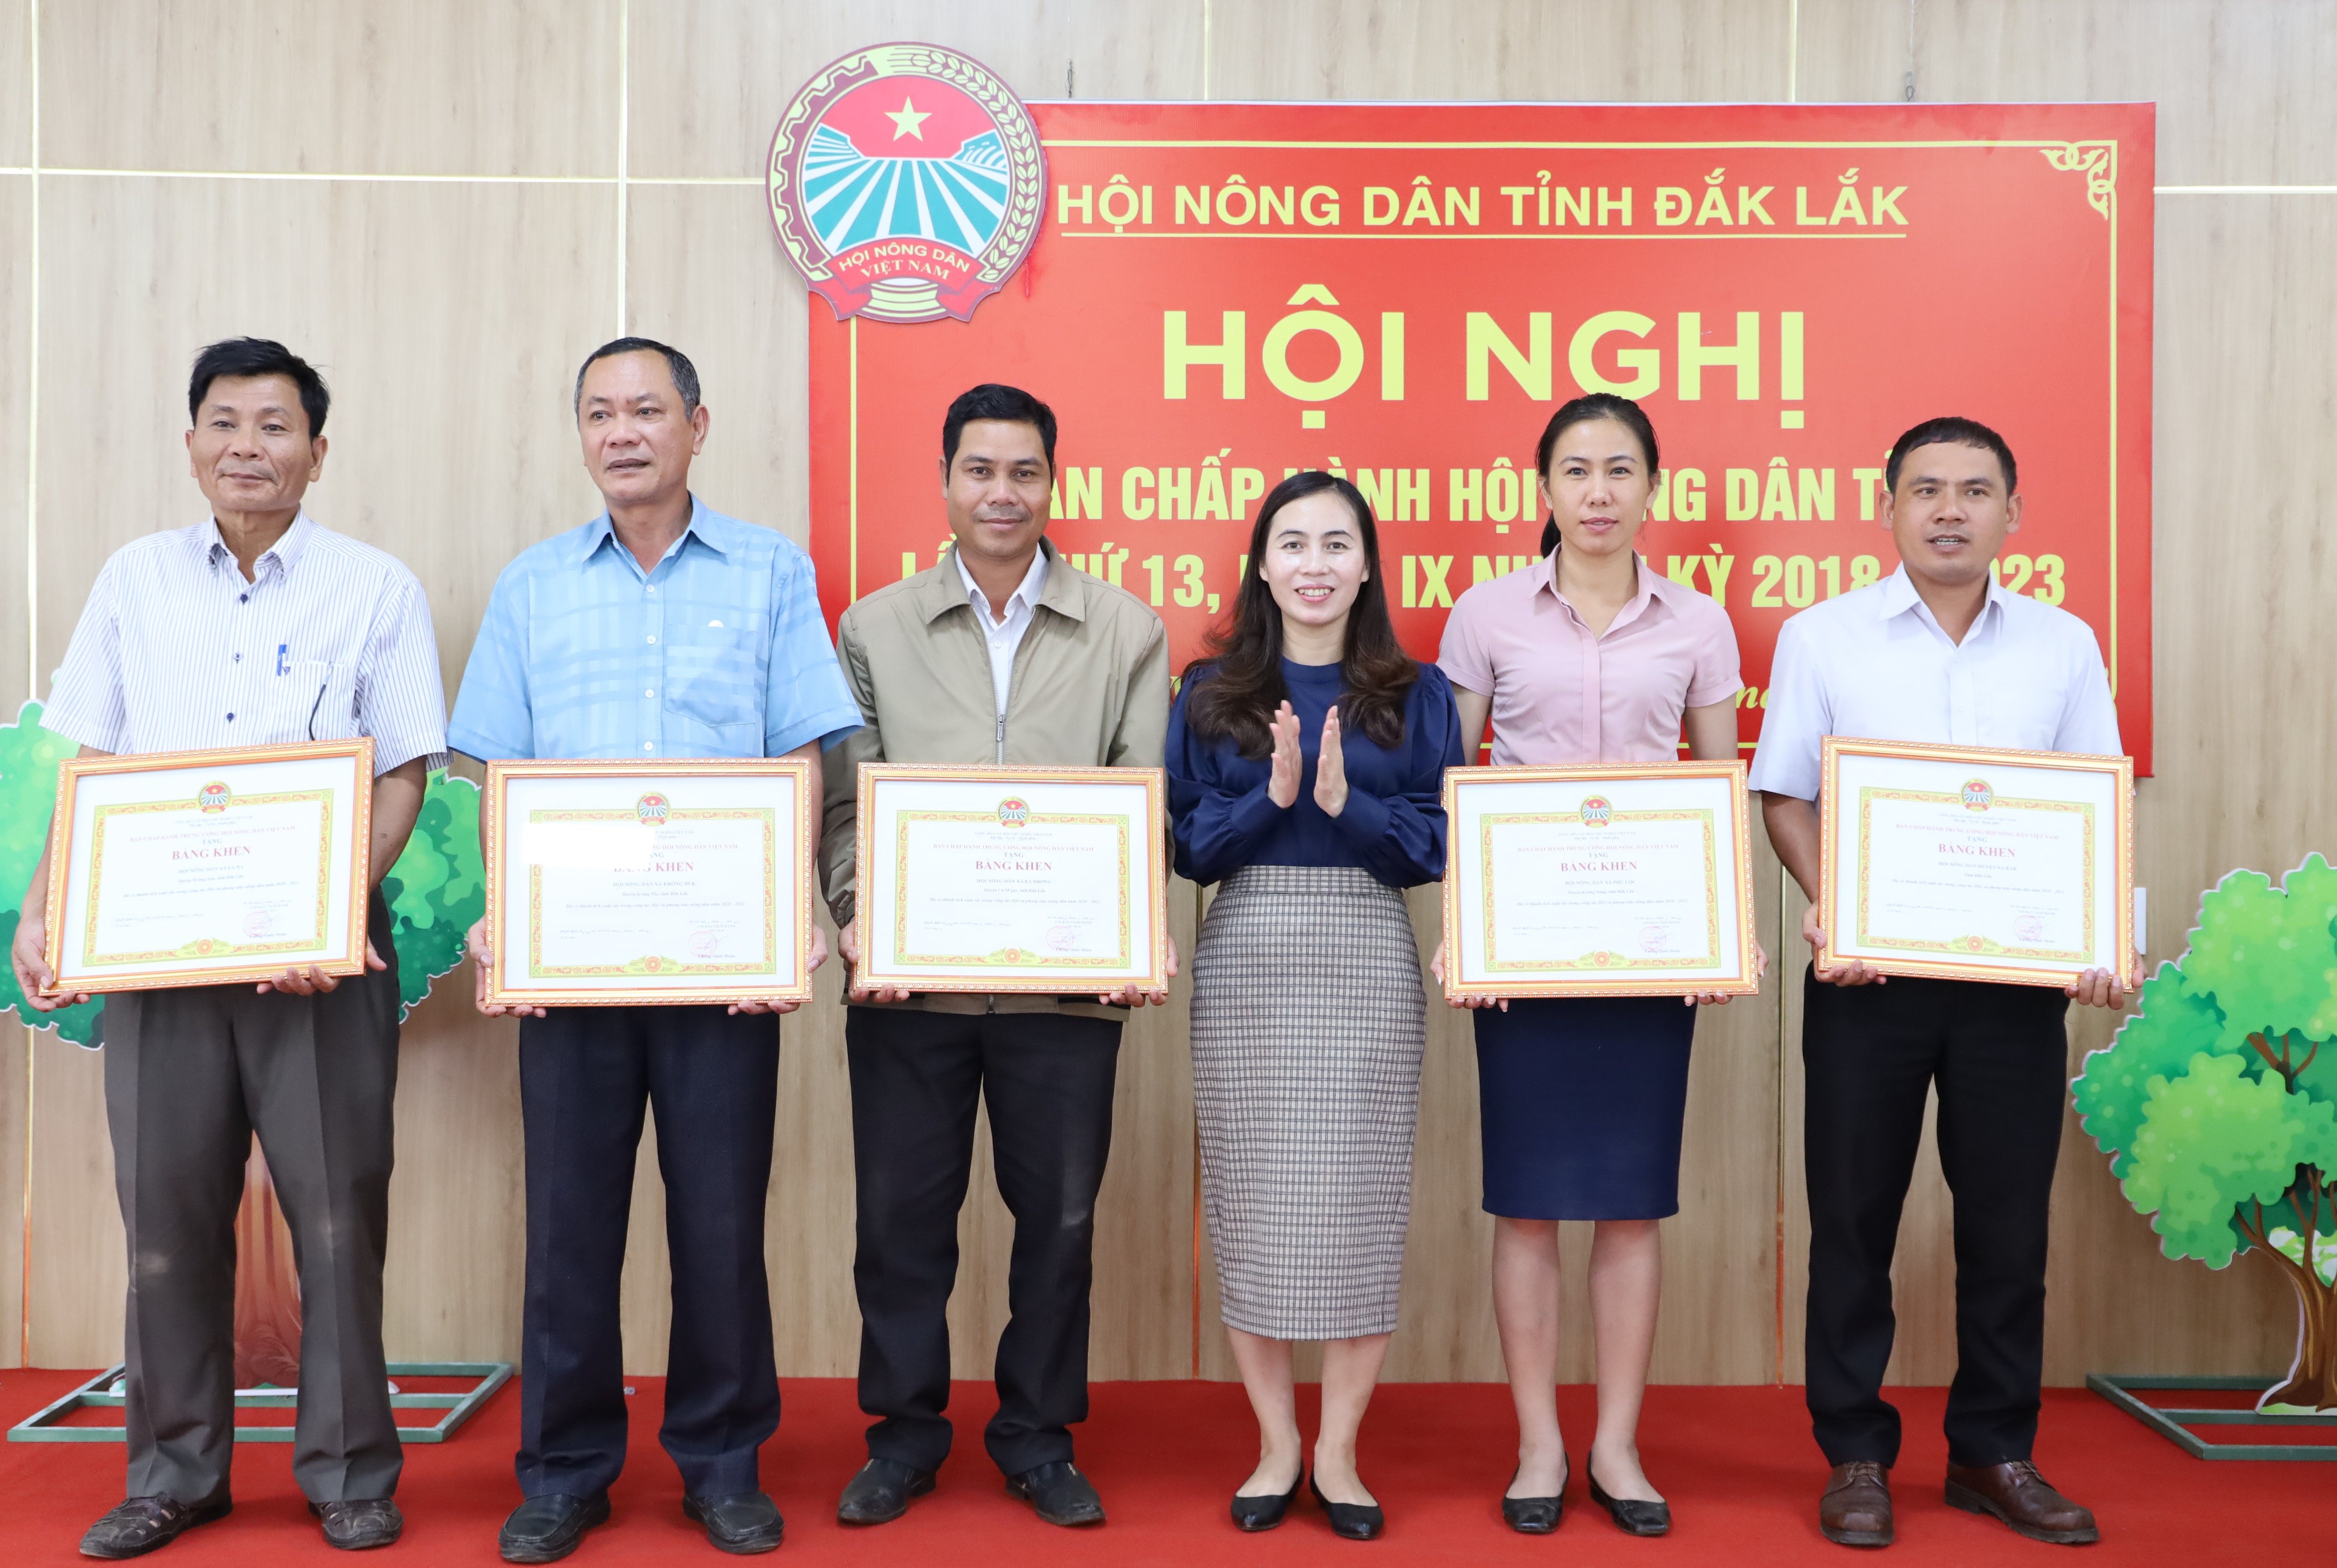 Hội nghị Ban Chấp hành Hội Nông dân tỉnh Đắk Lắk lần thứ 13, khóa IX, nhiệm kỳ 2018-2023